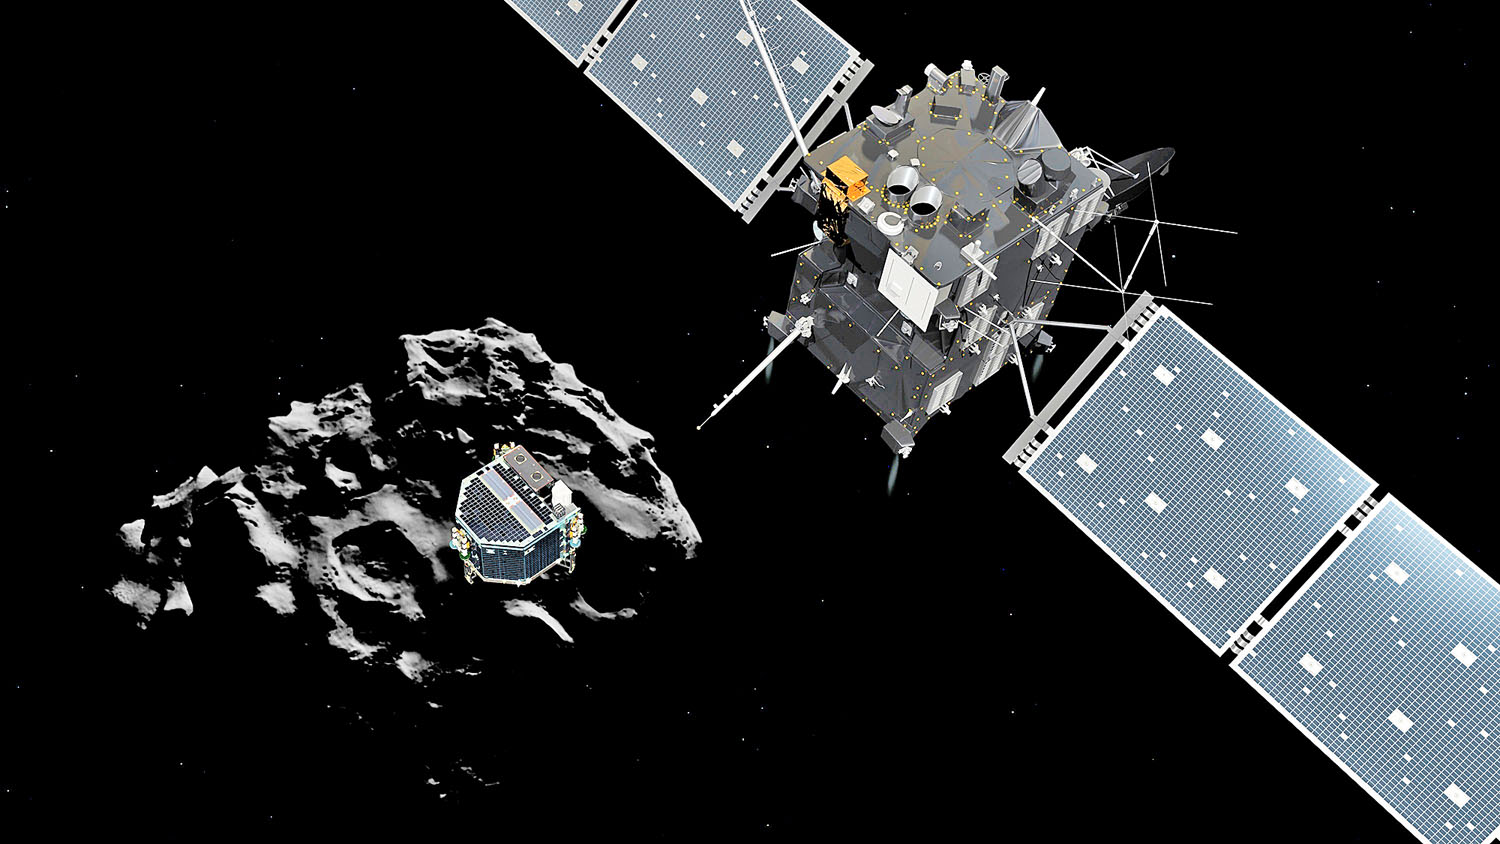 Rajz a Rosetta űrszondáról, melynek leszállóegysége, a Philae épp az üstökösön landol